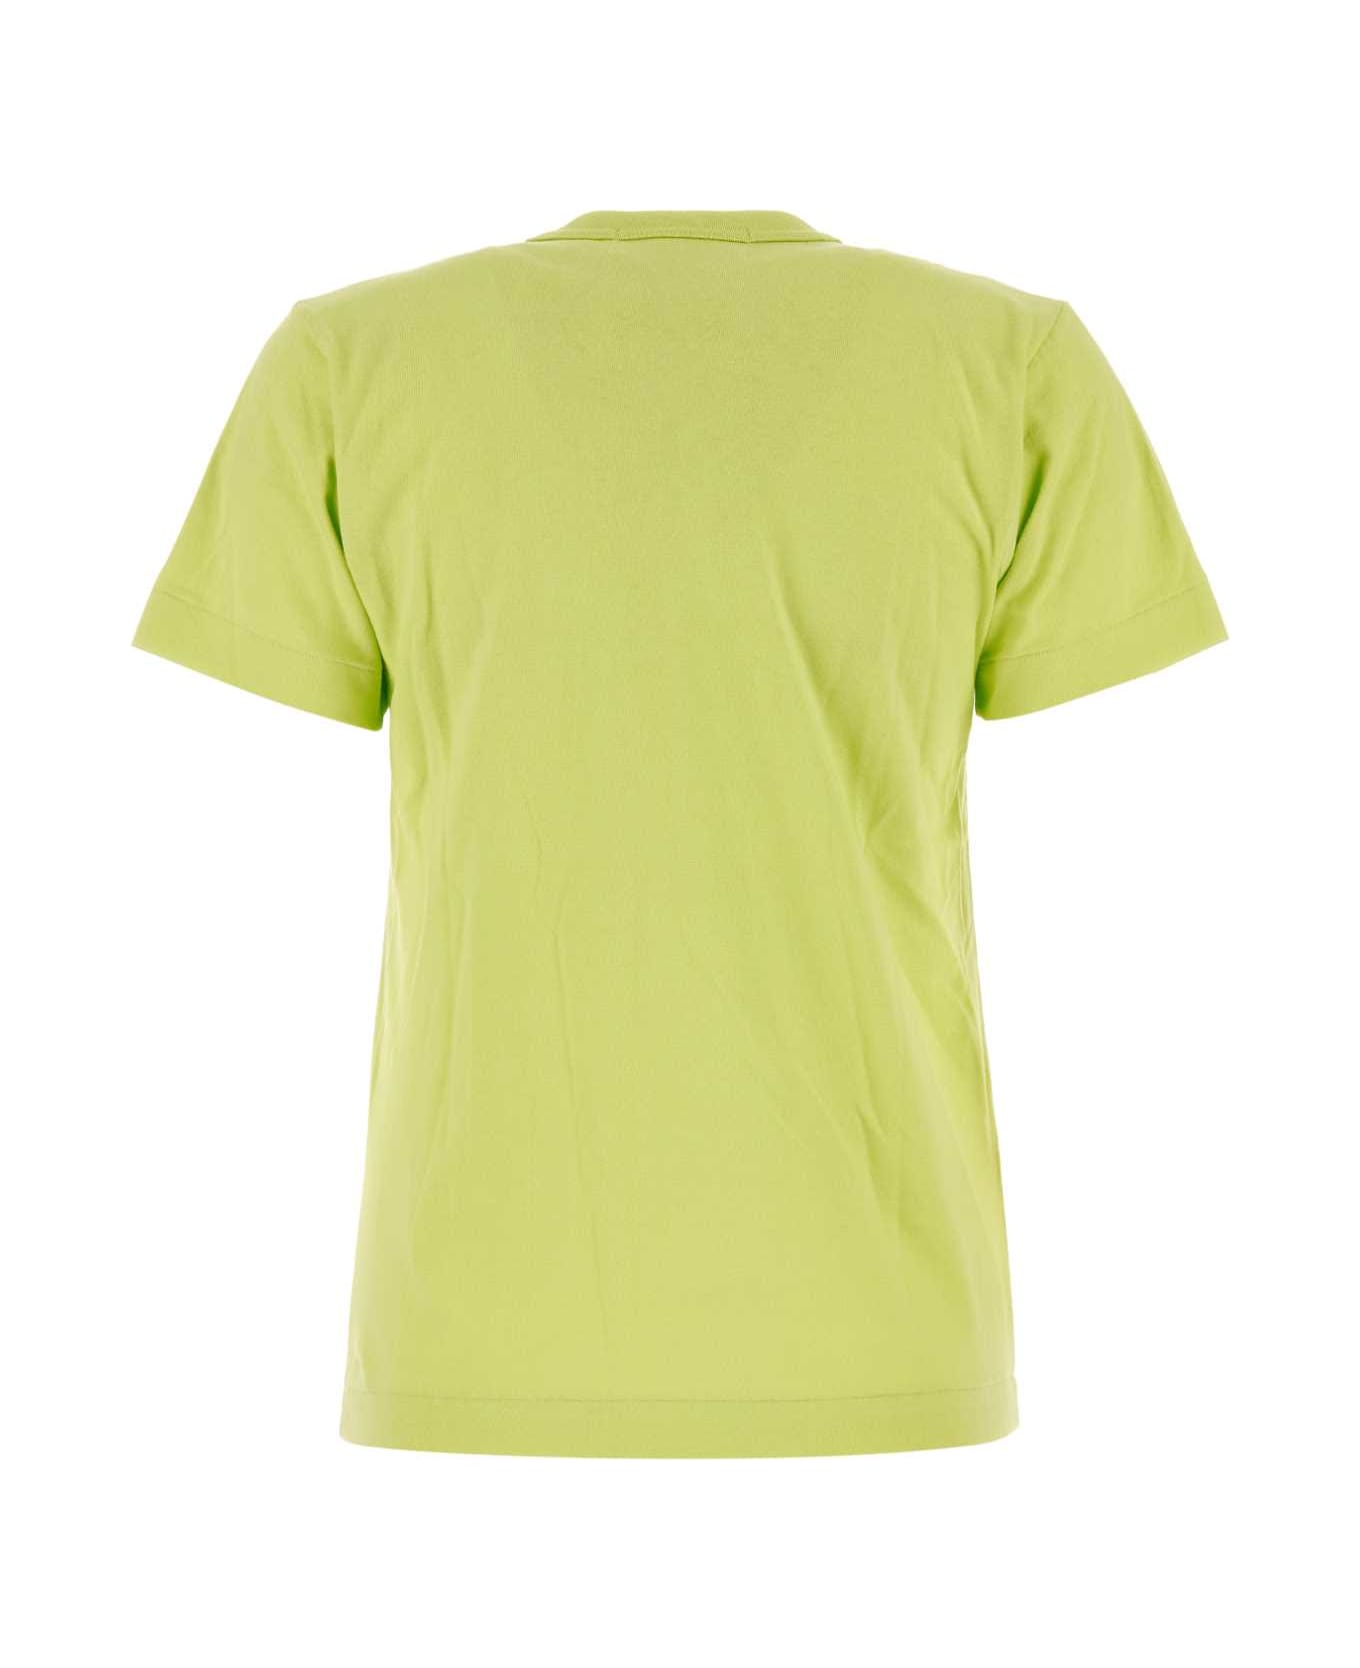 Comme des Garçons Play Acid Green Cotton T-shirt - GREEN